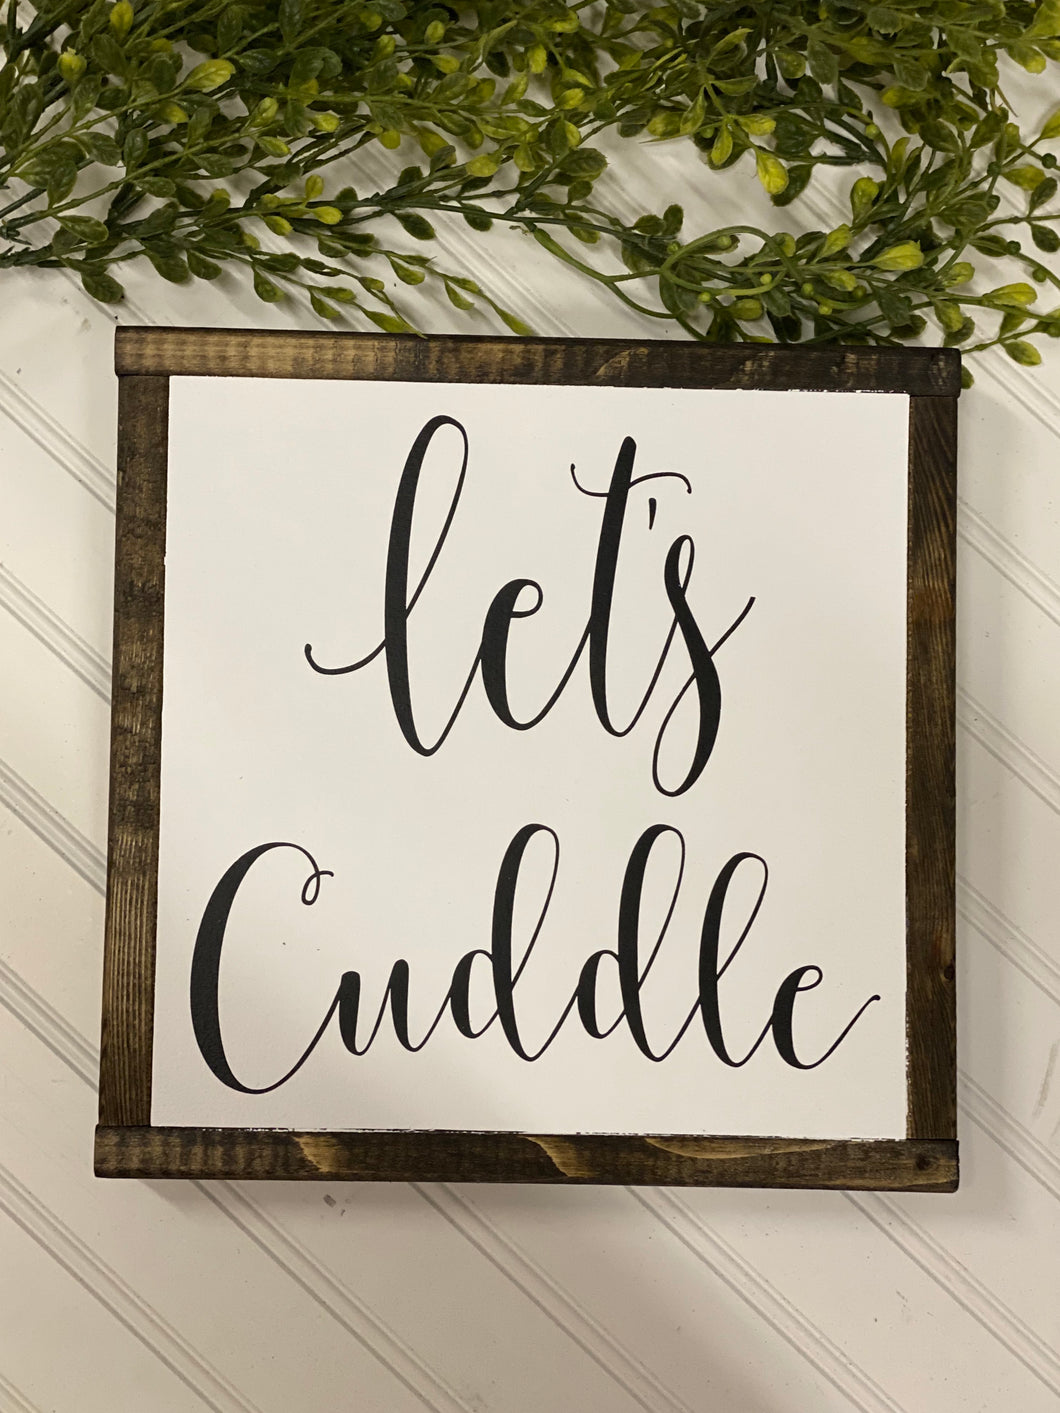 let’s cuddle